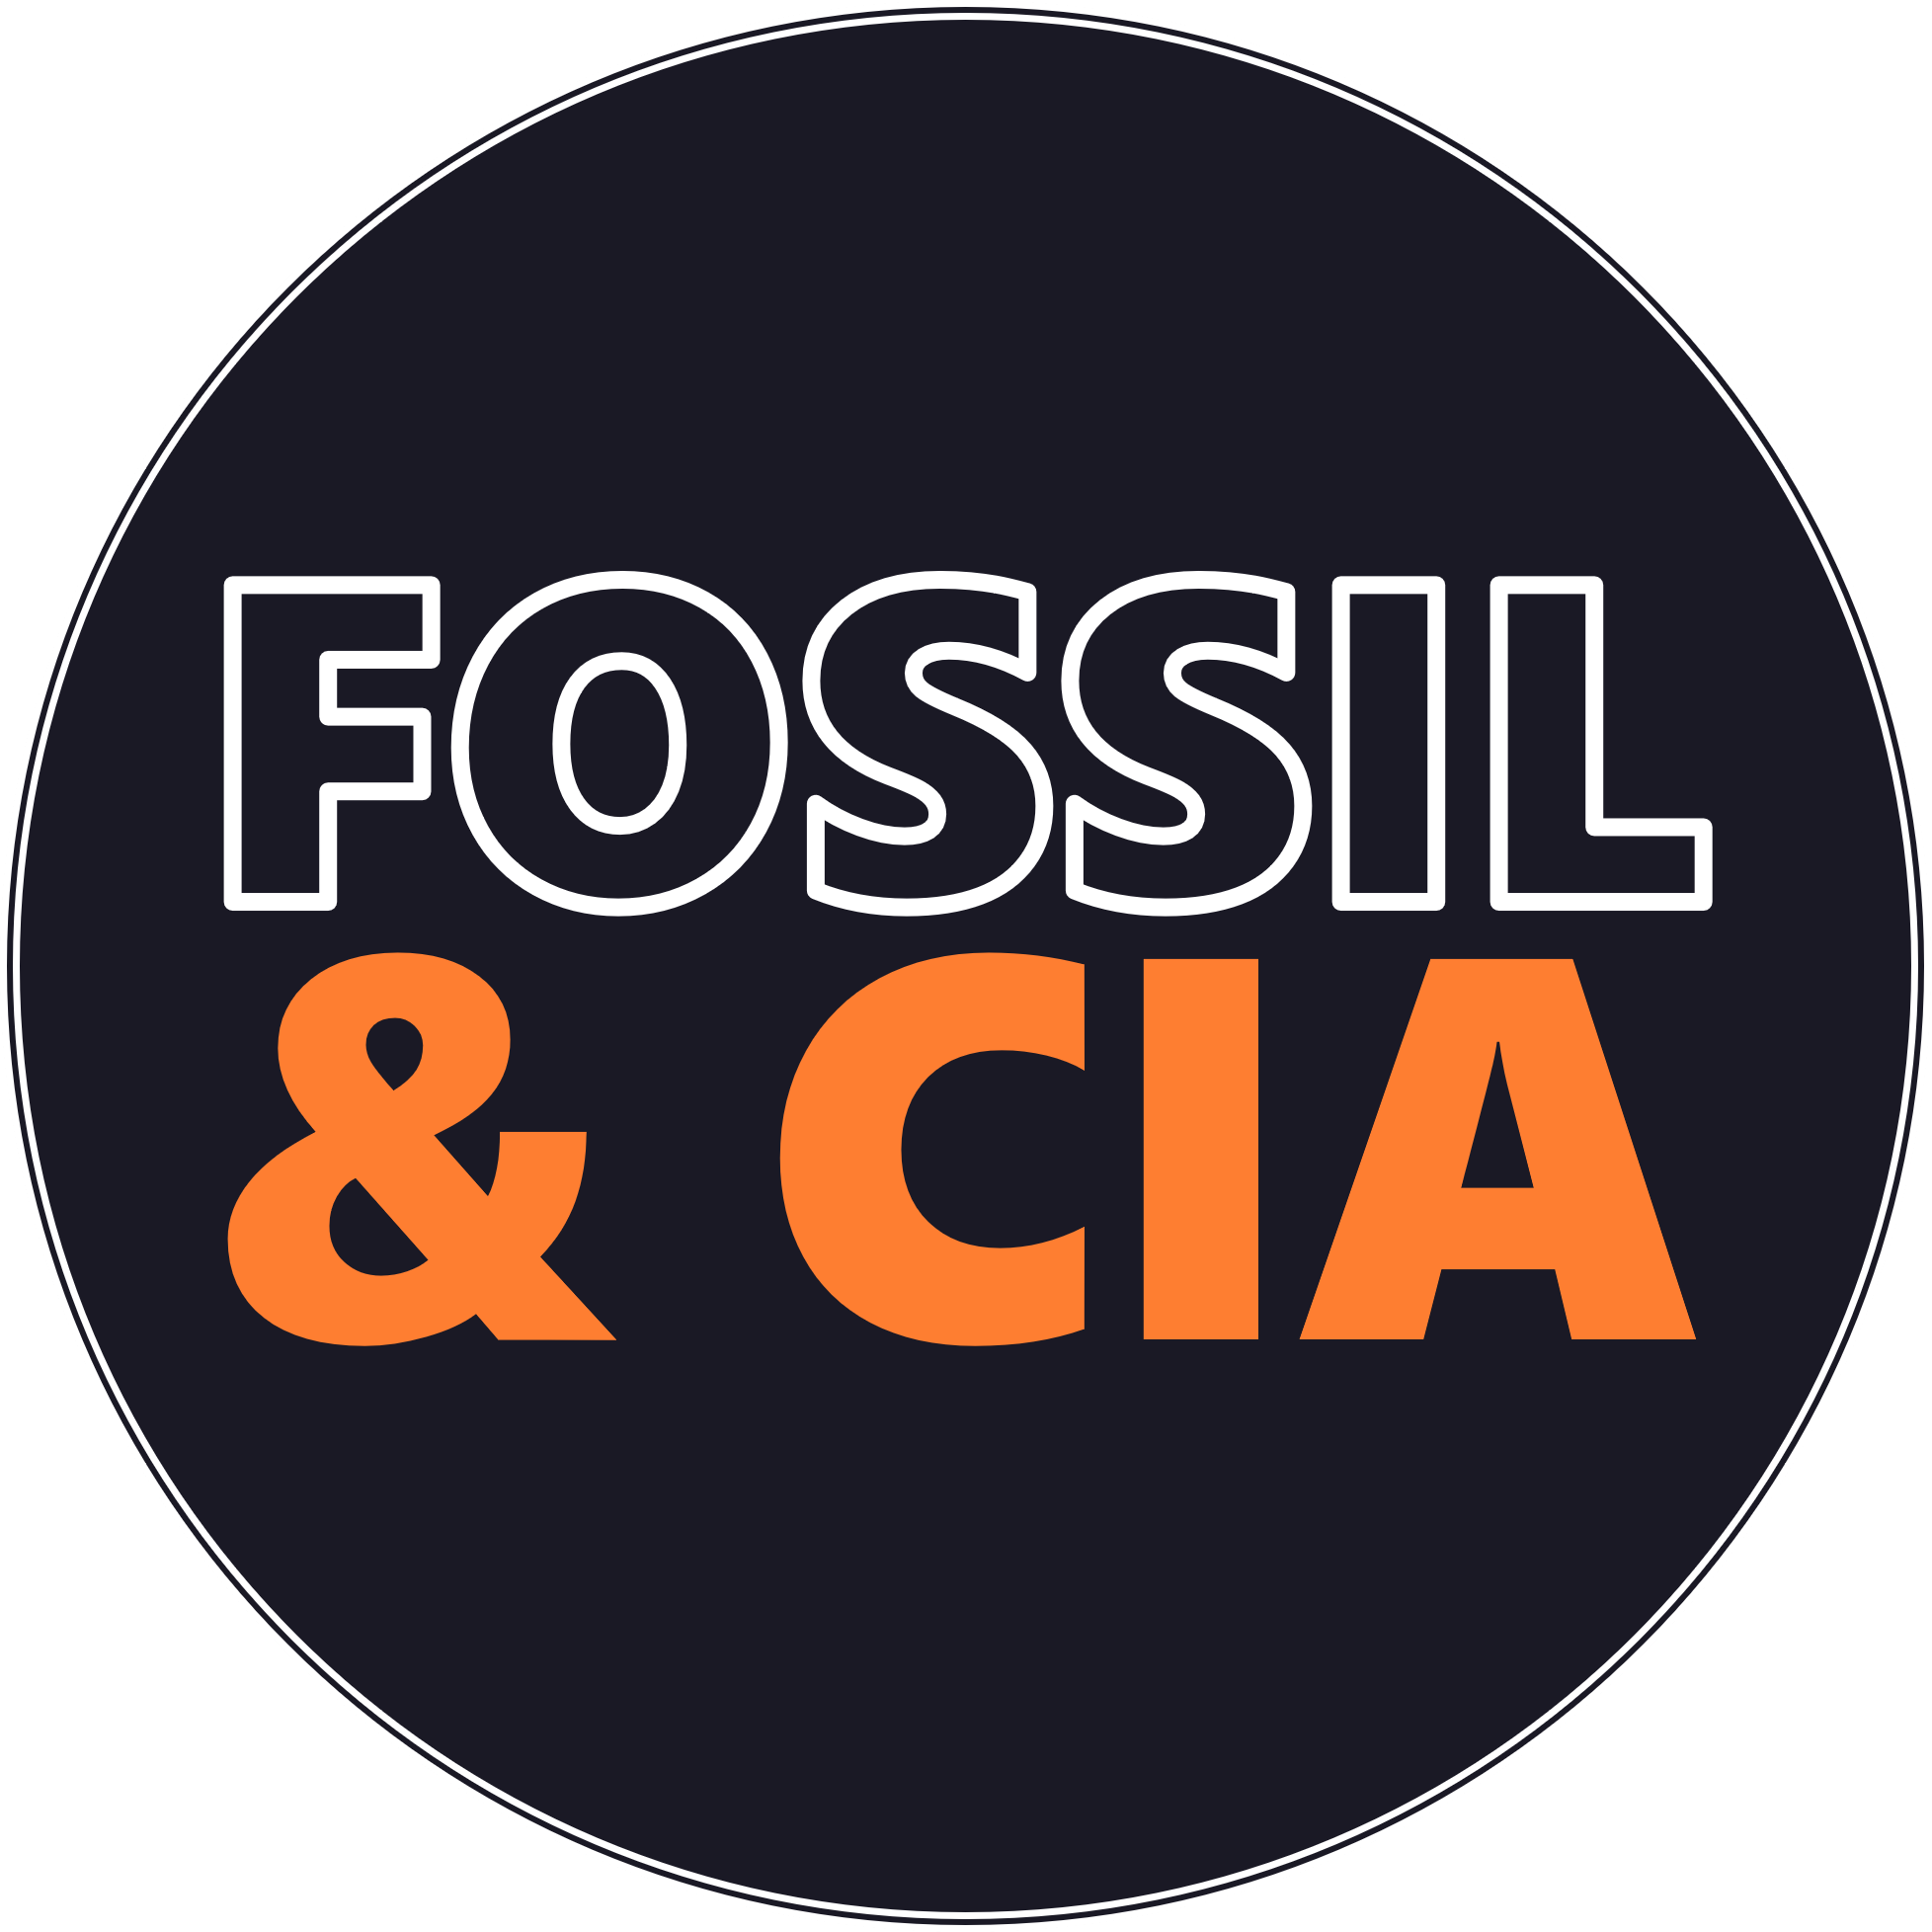 Fossil & Cia